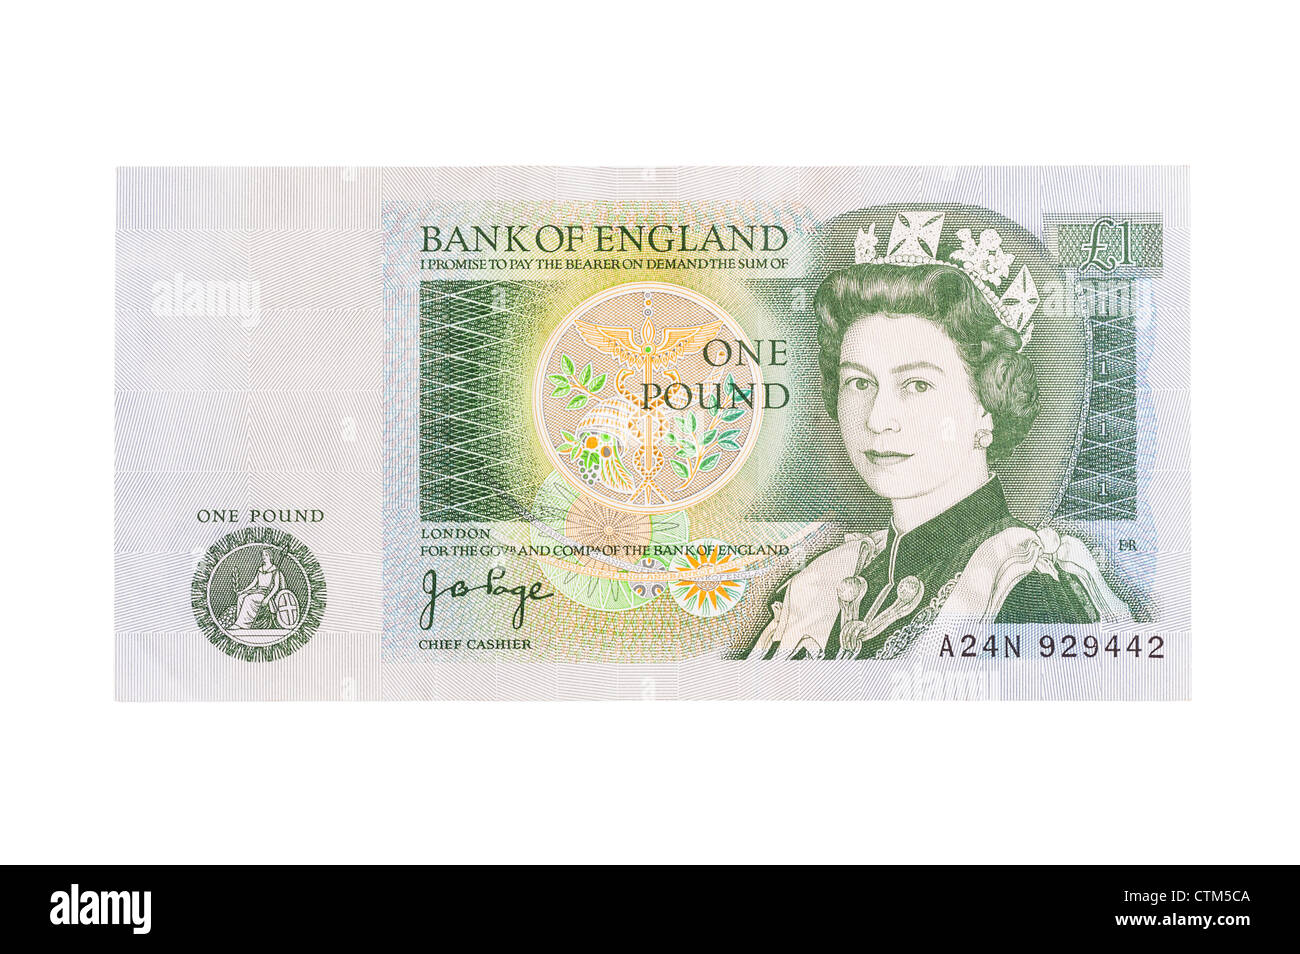 One pound note immagini e fotografie stock ad alta risoluzione - Alamy